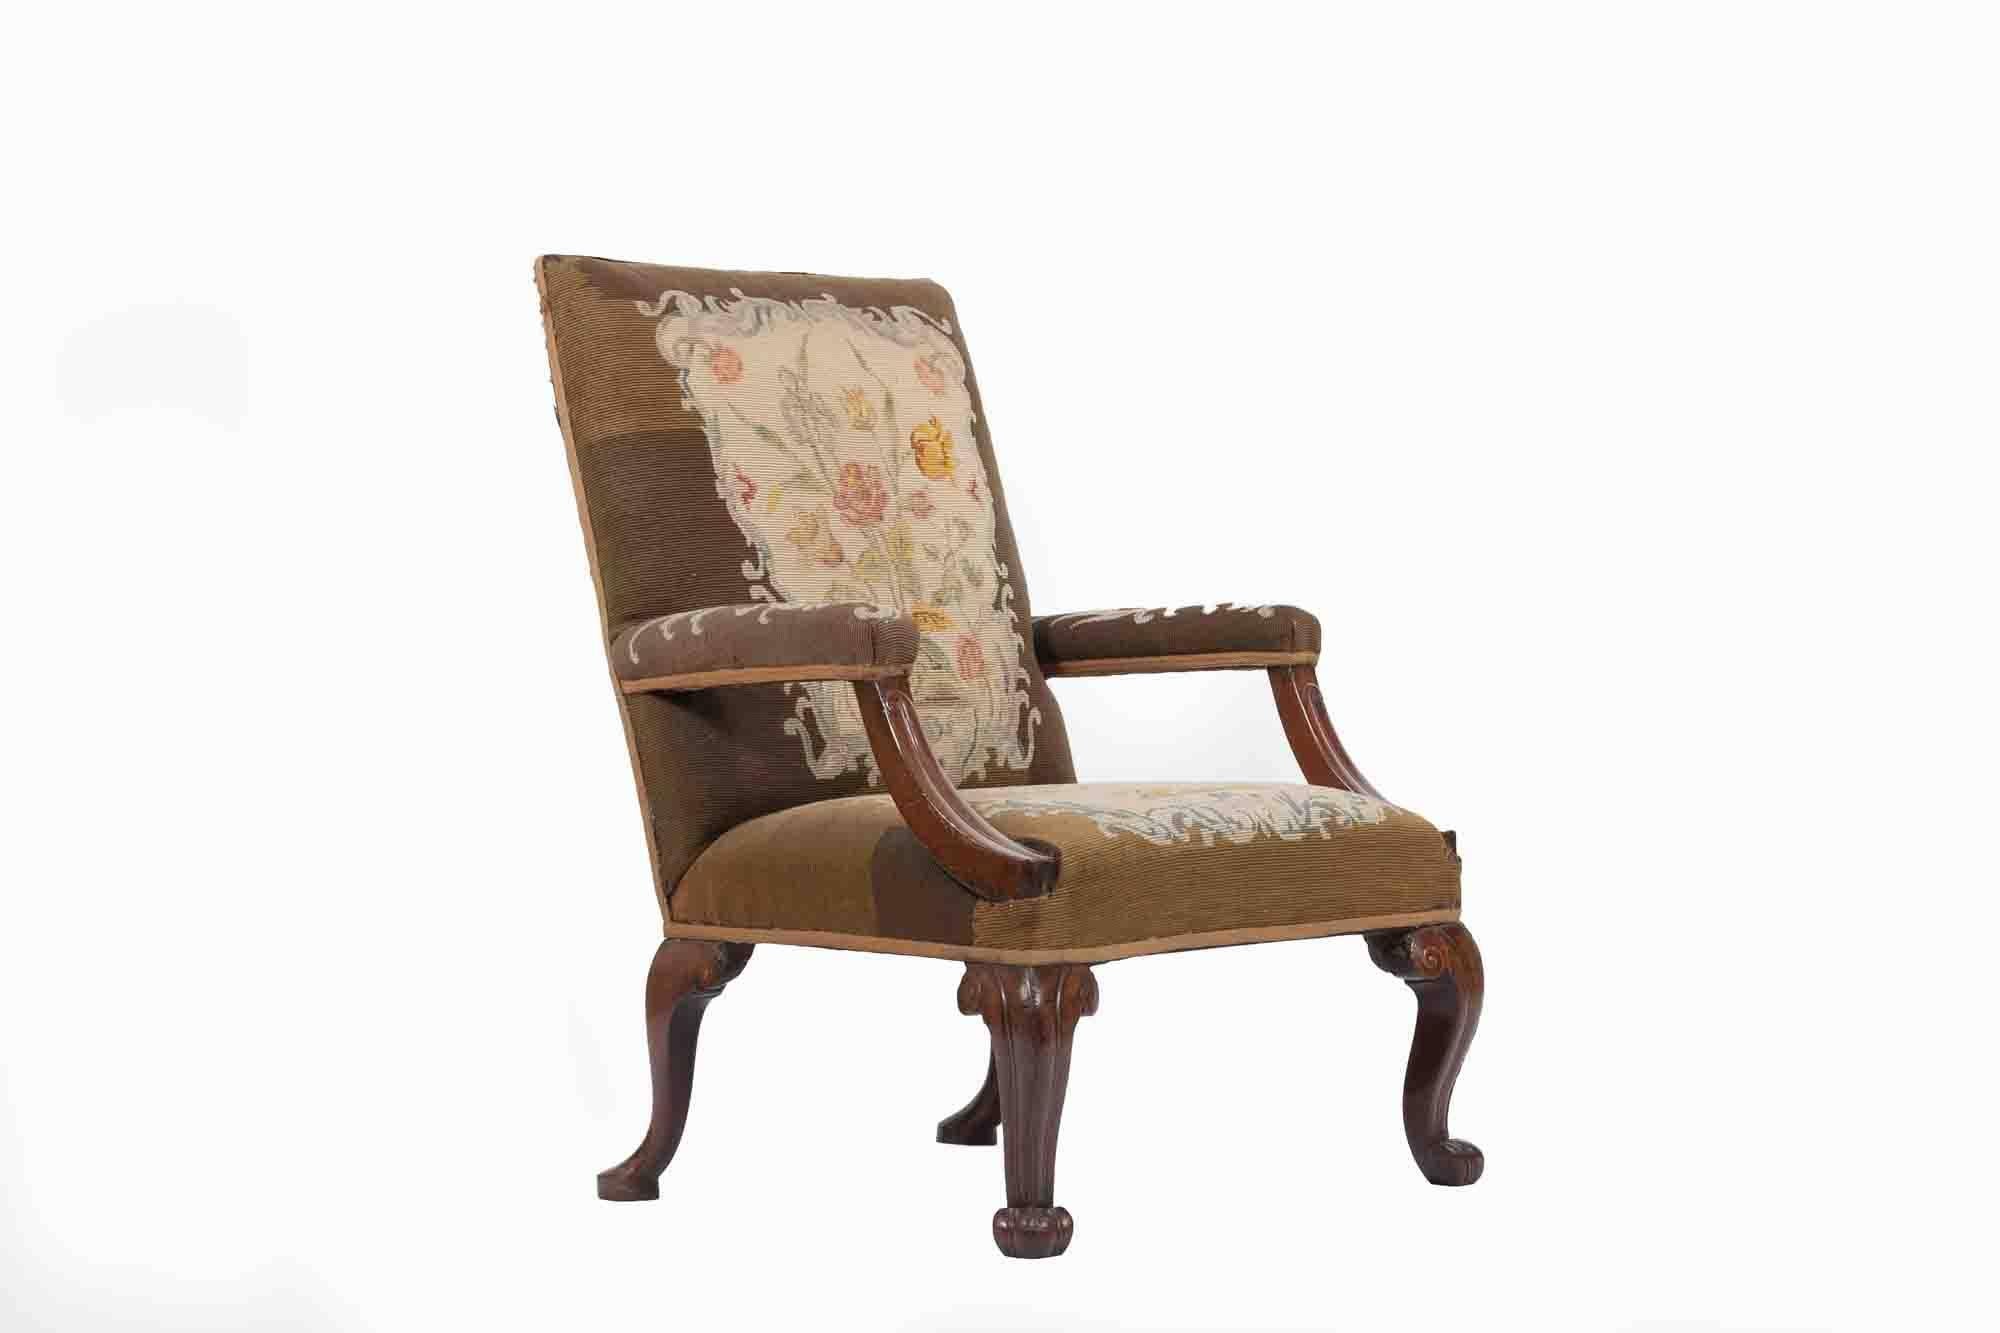 gainsborough-Sessel aus dem 19. Jahrhundert, quadratische gepolsterte Rückenlehne über geraden gepolsterten Armlehnen mit ungewöhnlich eingeschnittenen, nach unten gerichteten Stützen. Alle gepolstert in Petit Point auf eingeschnittene Schnecke